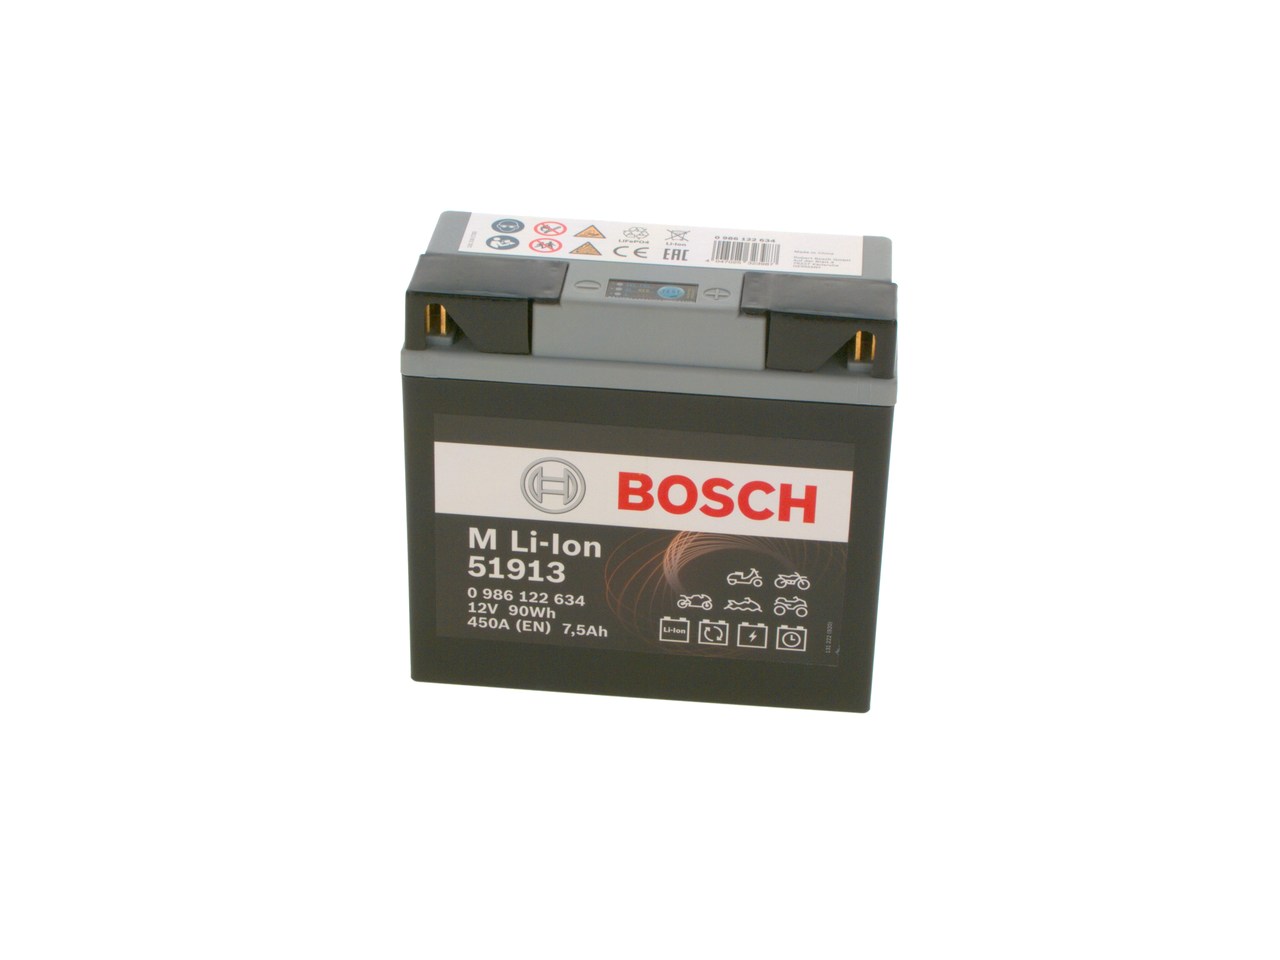 YAMAHA XT Batterie 12V 7,5Ah 450A B00 Li-Ionen-Batterie BOSCH 0986122634